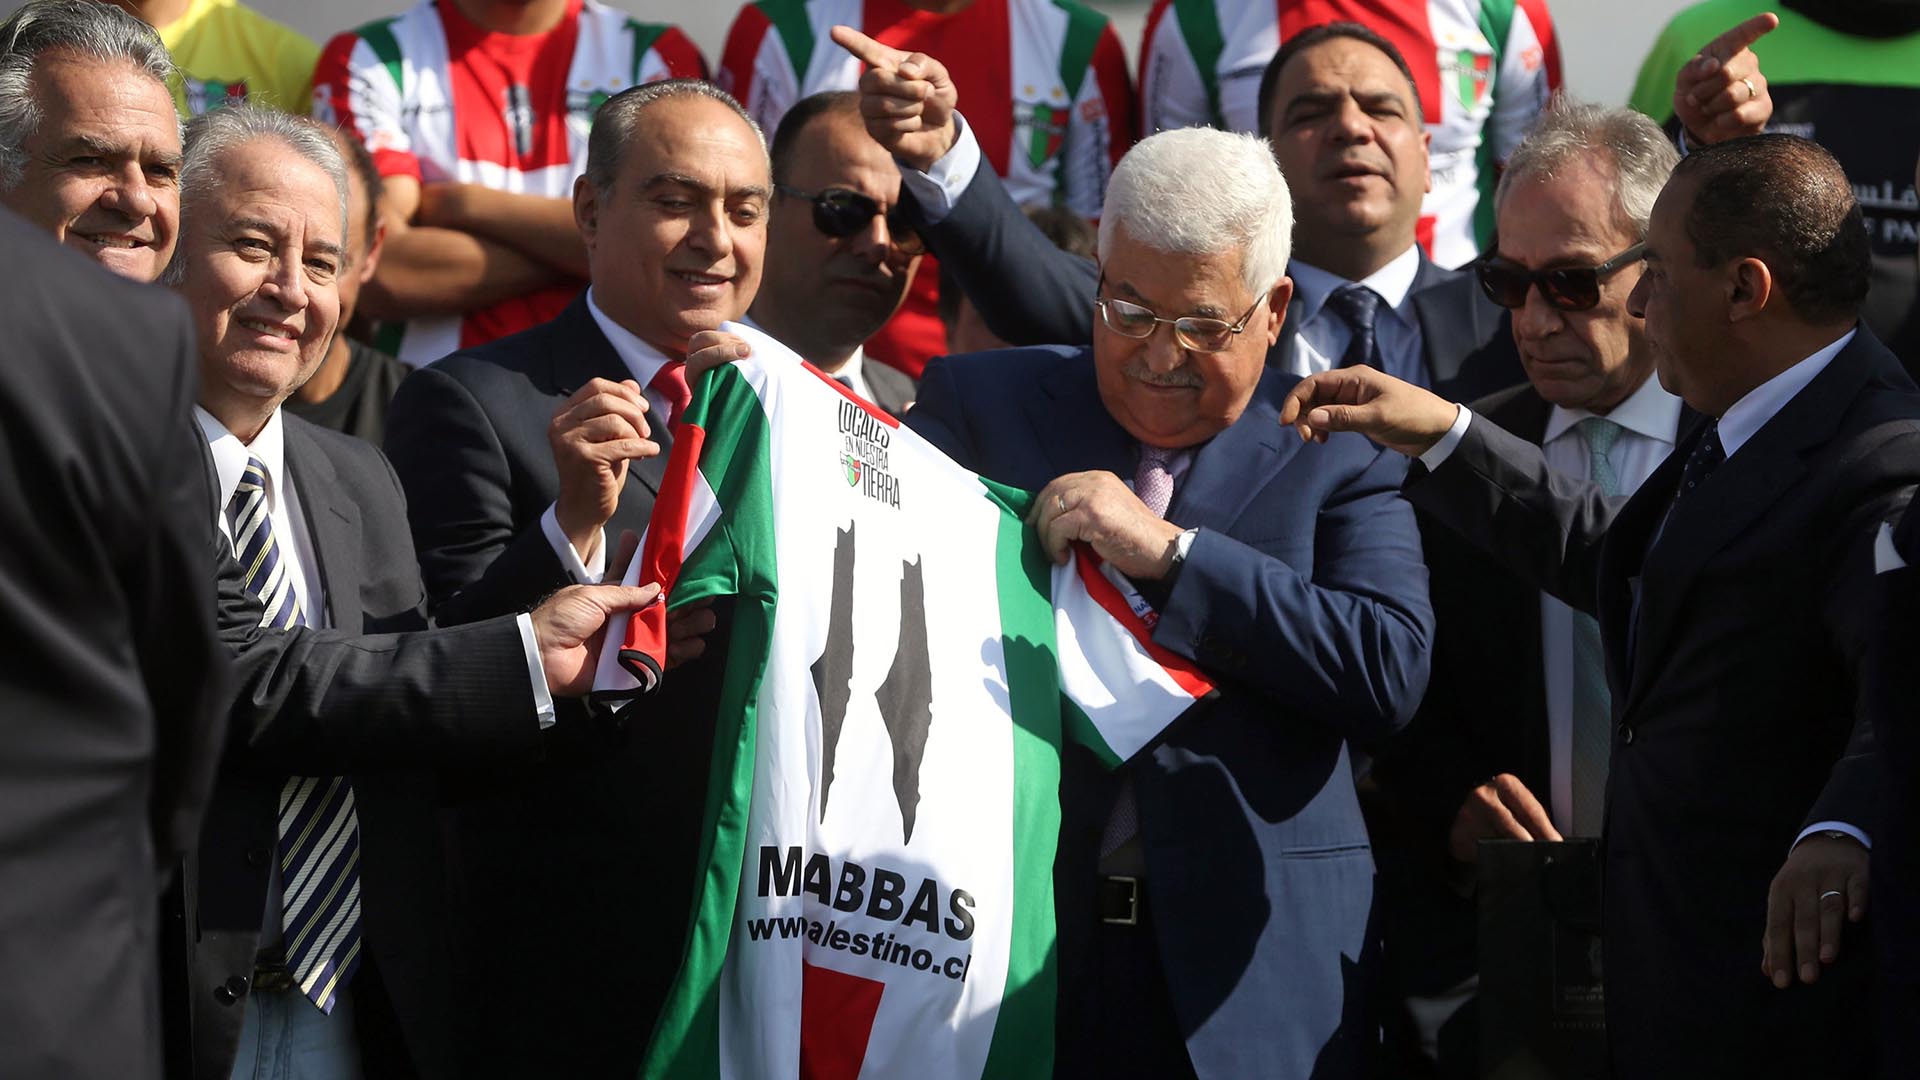 Patrocinado por el Bank of Palestine, se distingue por sus muestras de apoyo al pueblo palestino. Mahmoud Abbas, presidente de la Autoridad Nacional Palestina, visitó en 2018 el estadio de Palestino, que dos años antes jugó tres partidos en Cisjordania.